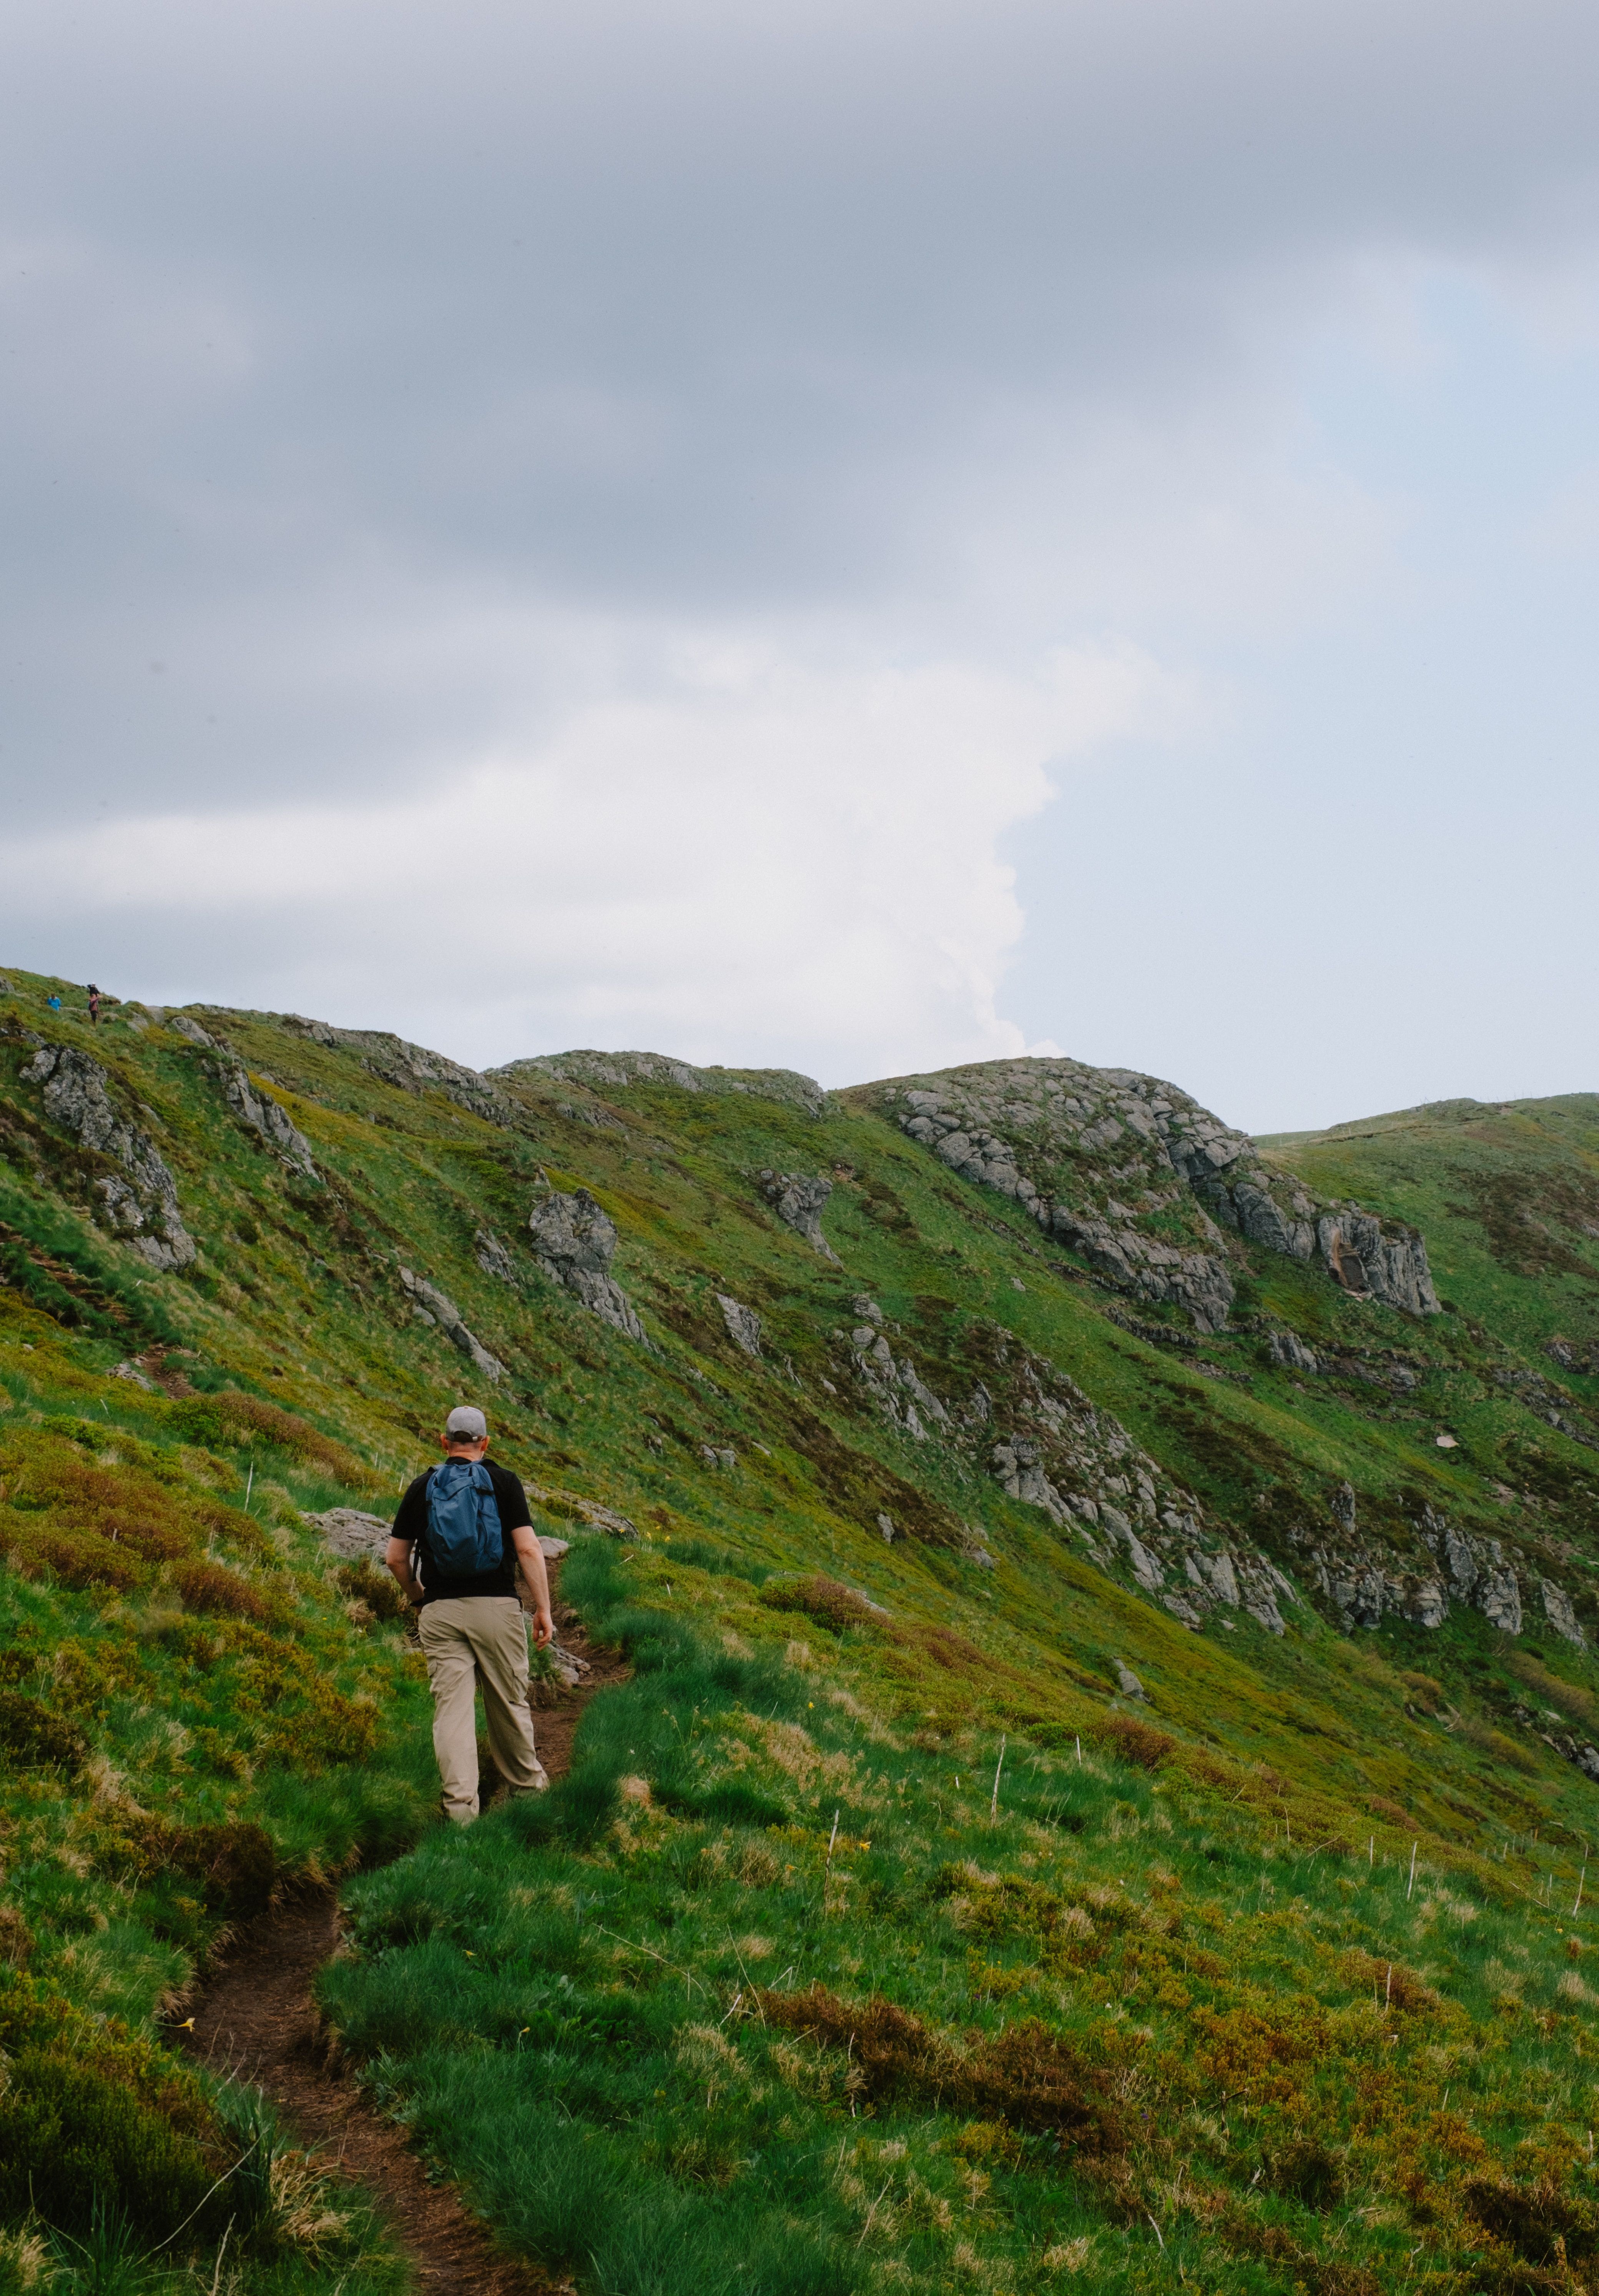 Person walking through a grassy mountaintop